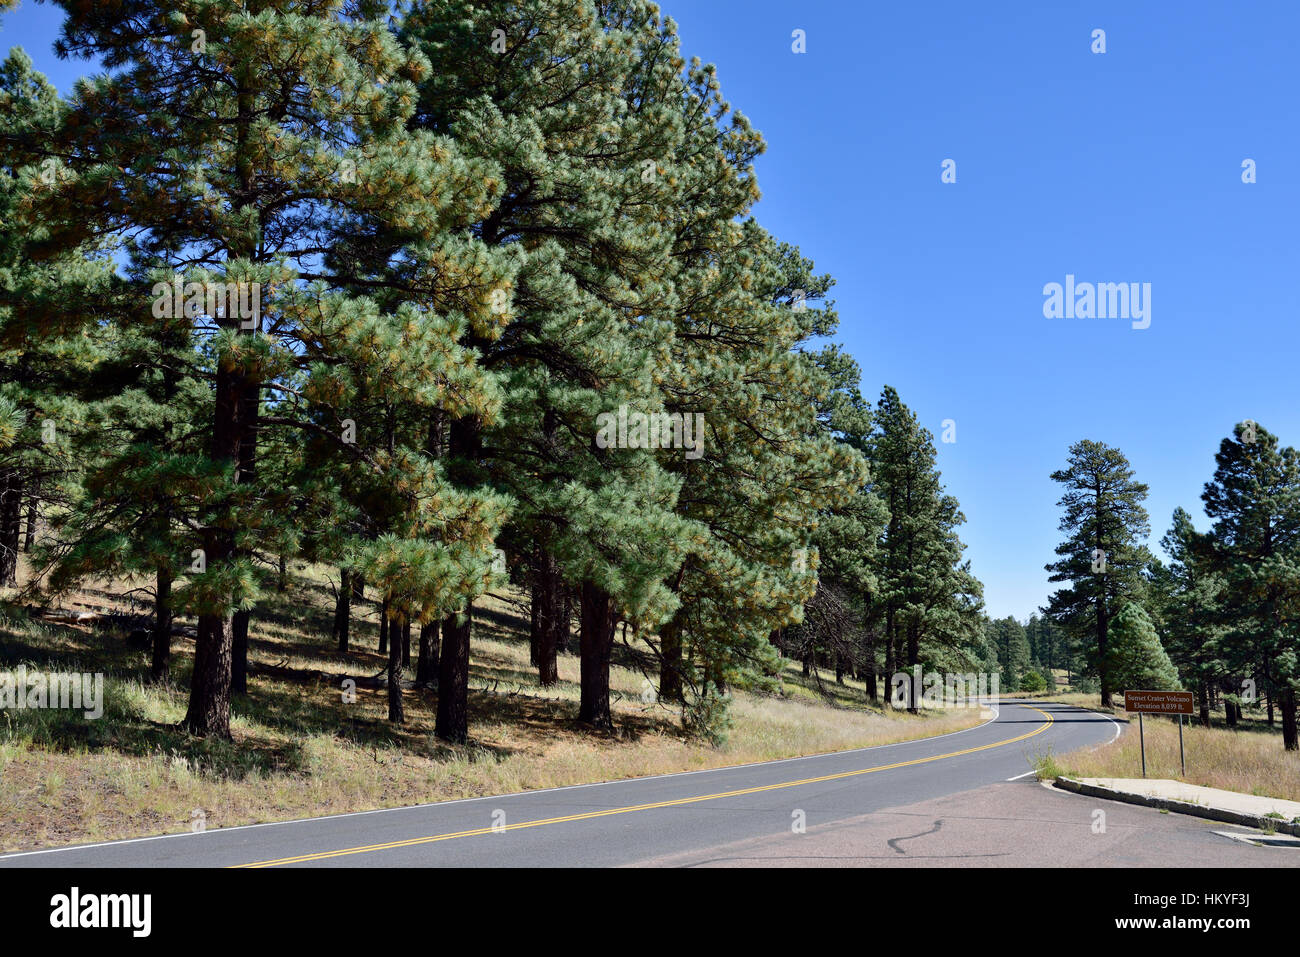 Route d'accès menant à travers une forêt de pins à Sunset Crater Volcano National Monument, Coconino Comté Arizona, USA. Randonnées et camping. Banque D'Images